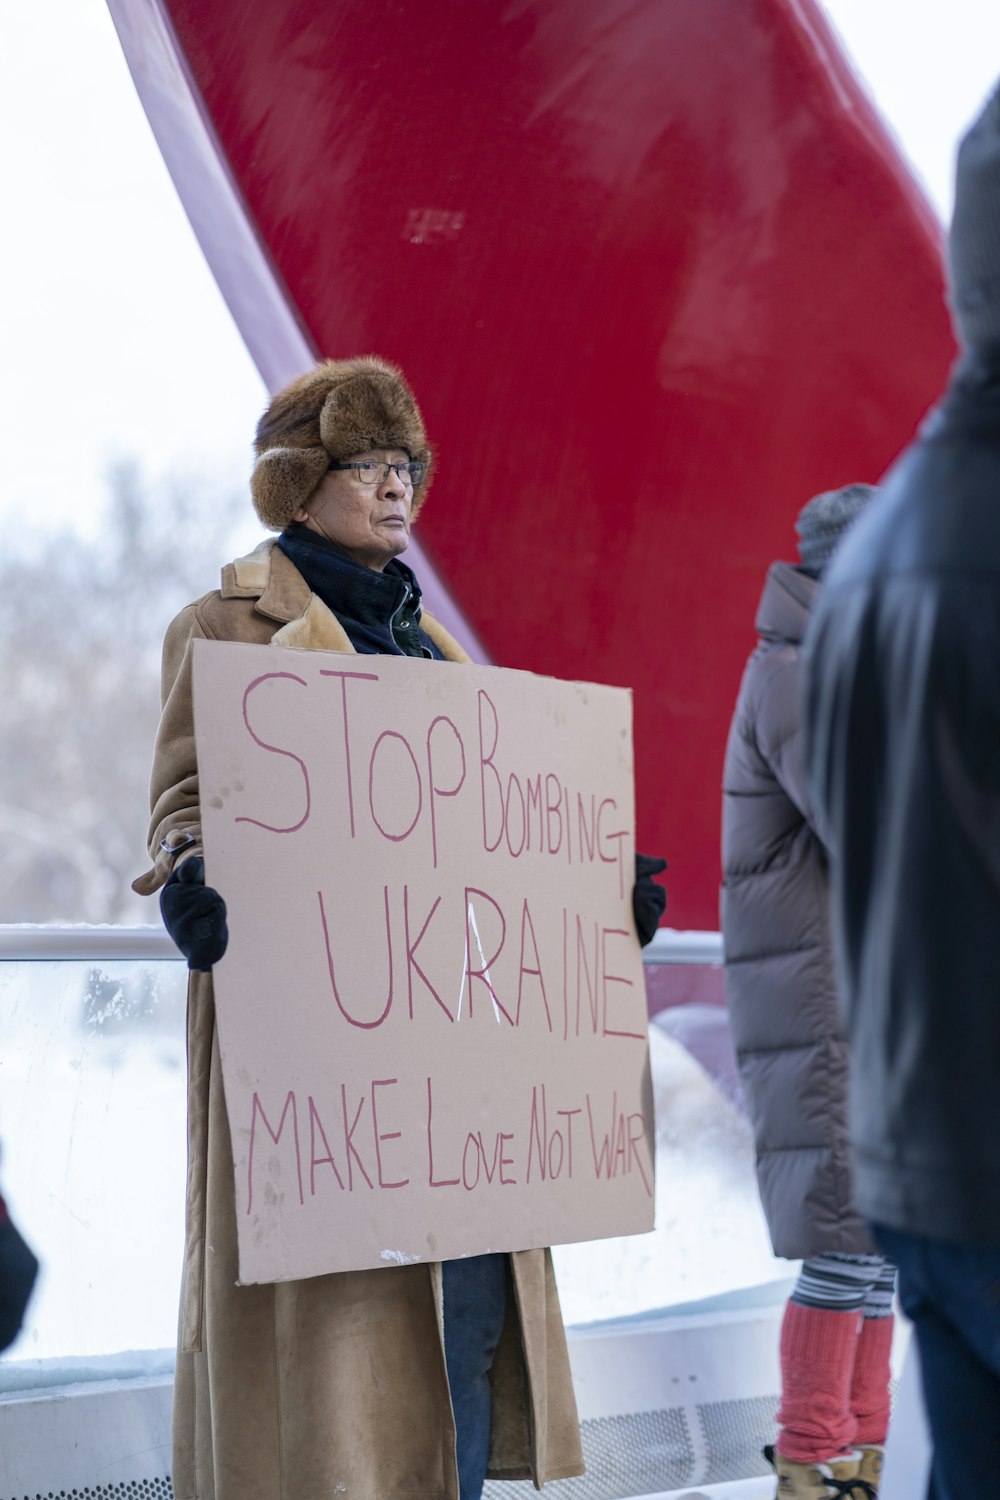 Una donna che tiene un cartello che dice di smettere di bombardare l'Ucraina Fai l'amore non la guerra